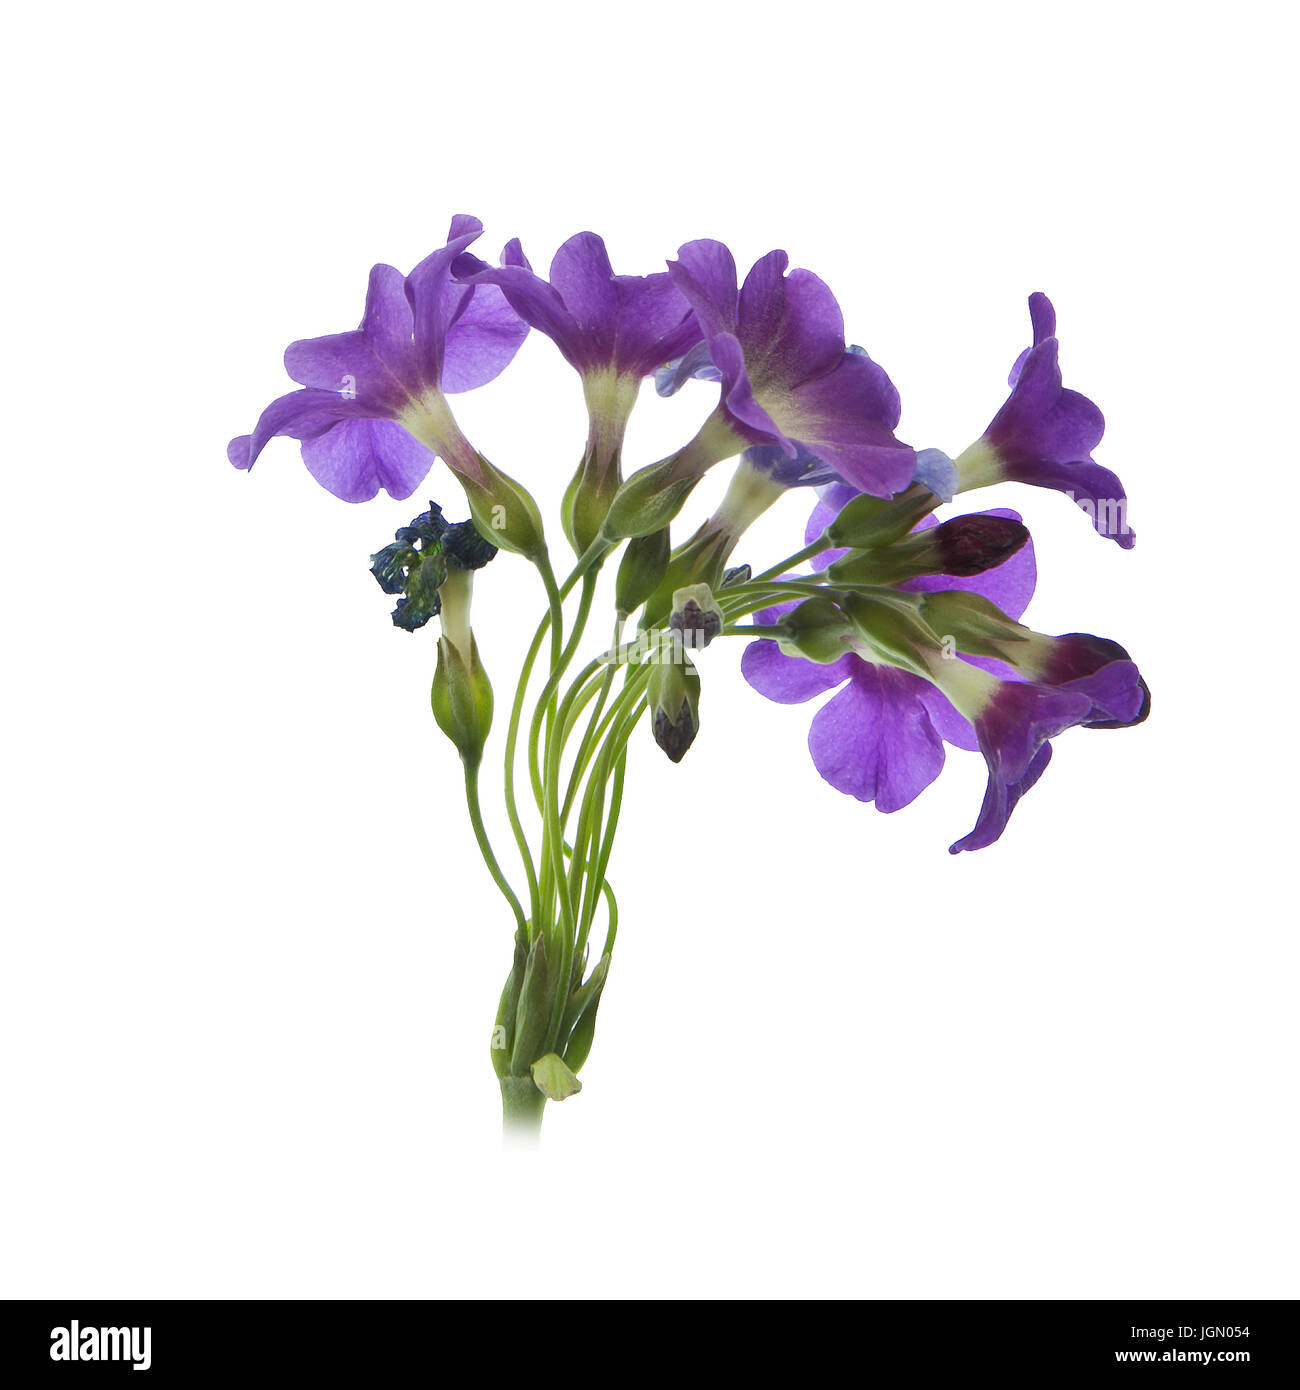 Primula alpicola flower head with border. Stock Photo